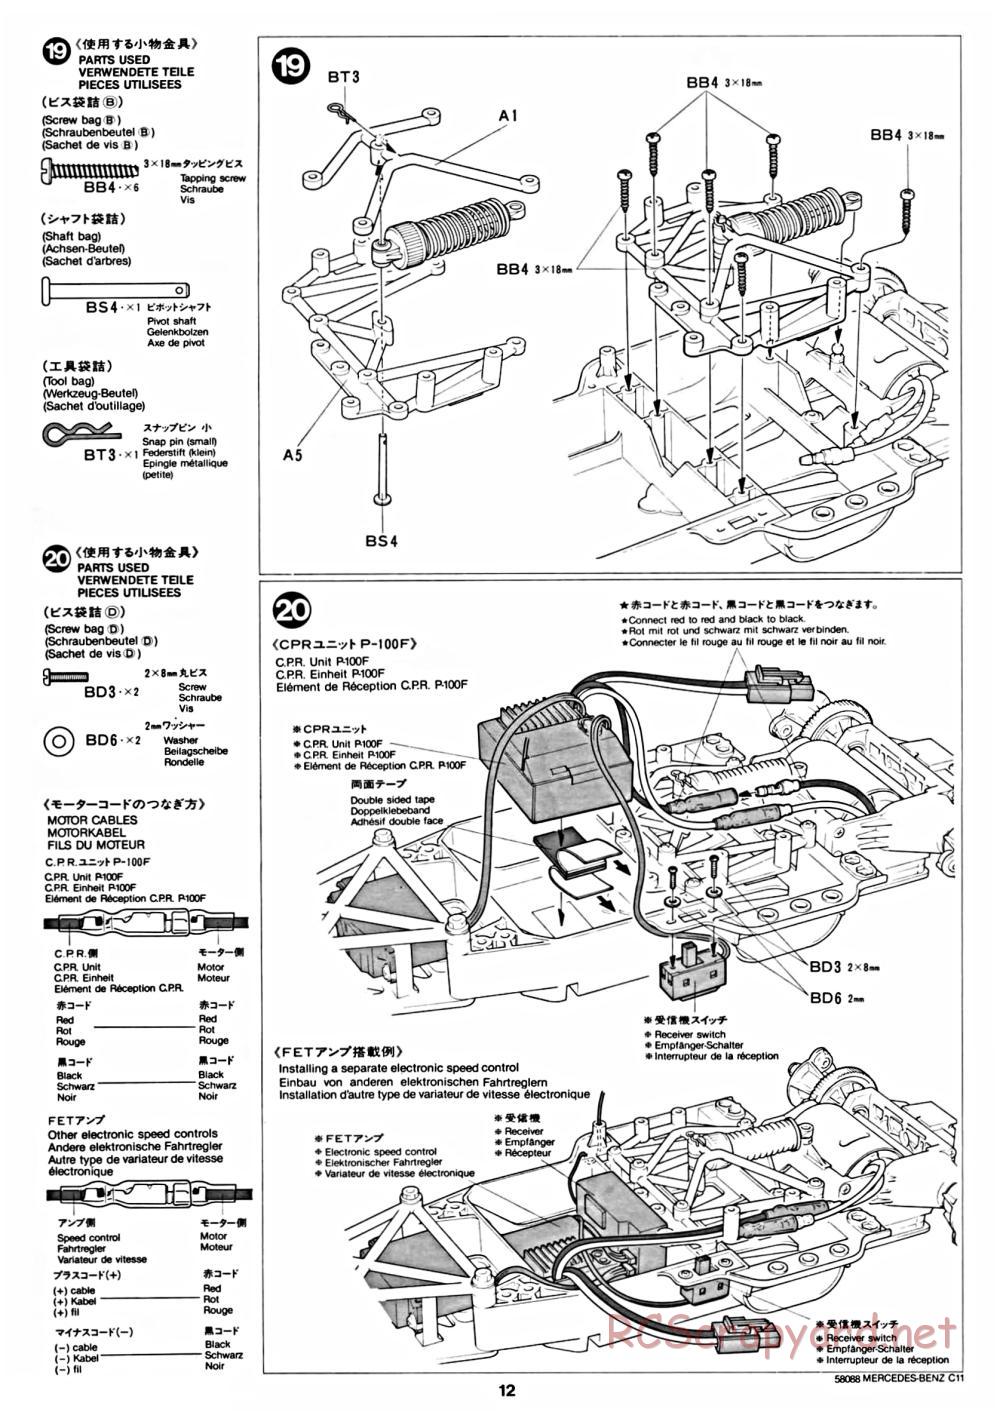 Tamiya - Mercedes Benz C11 - 58088 - Manual - Page 12